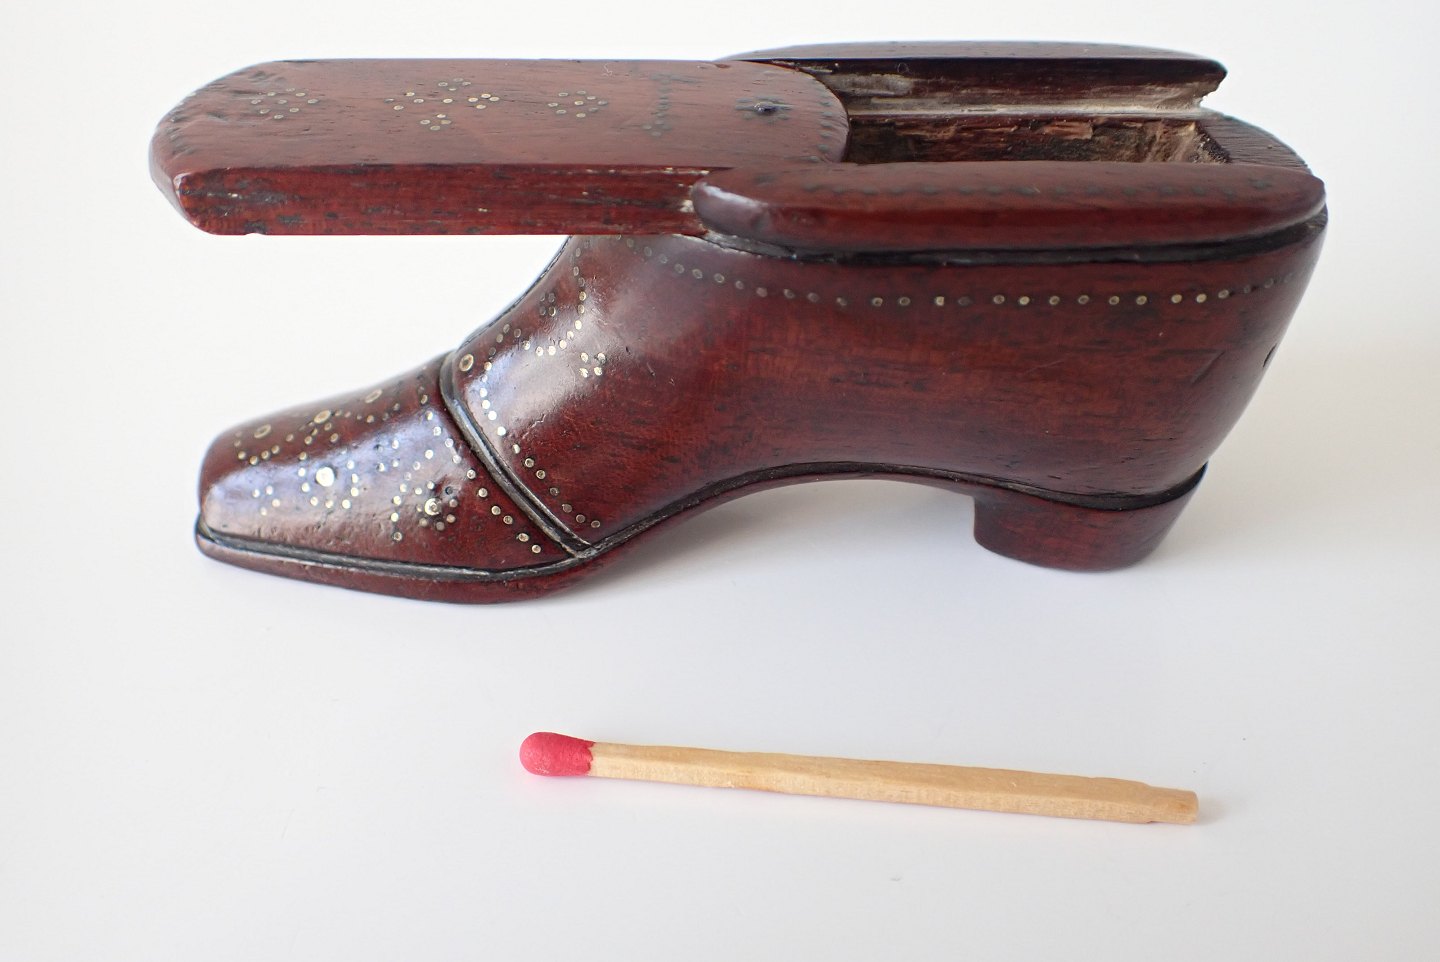 Adagio - Engelsk i rosentræ formet som støvle. - Engelsk susæske i rosentræ formet som en støvle.